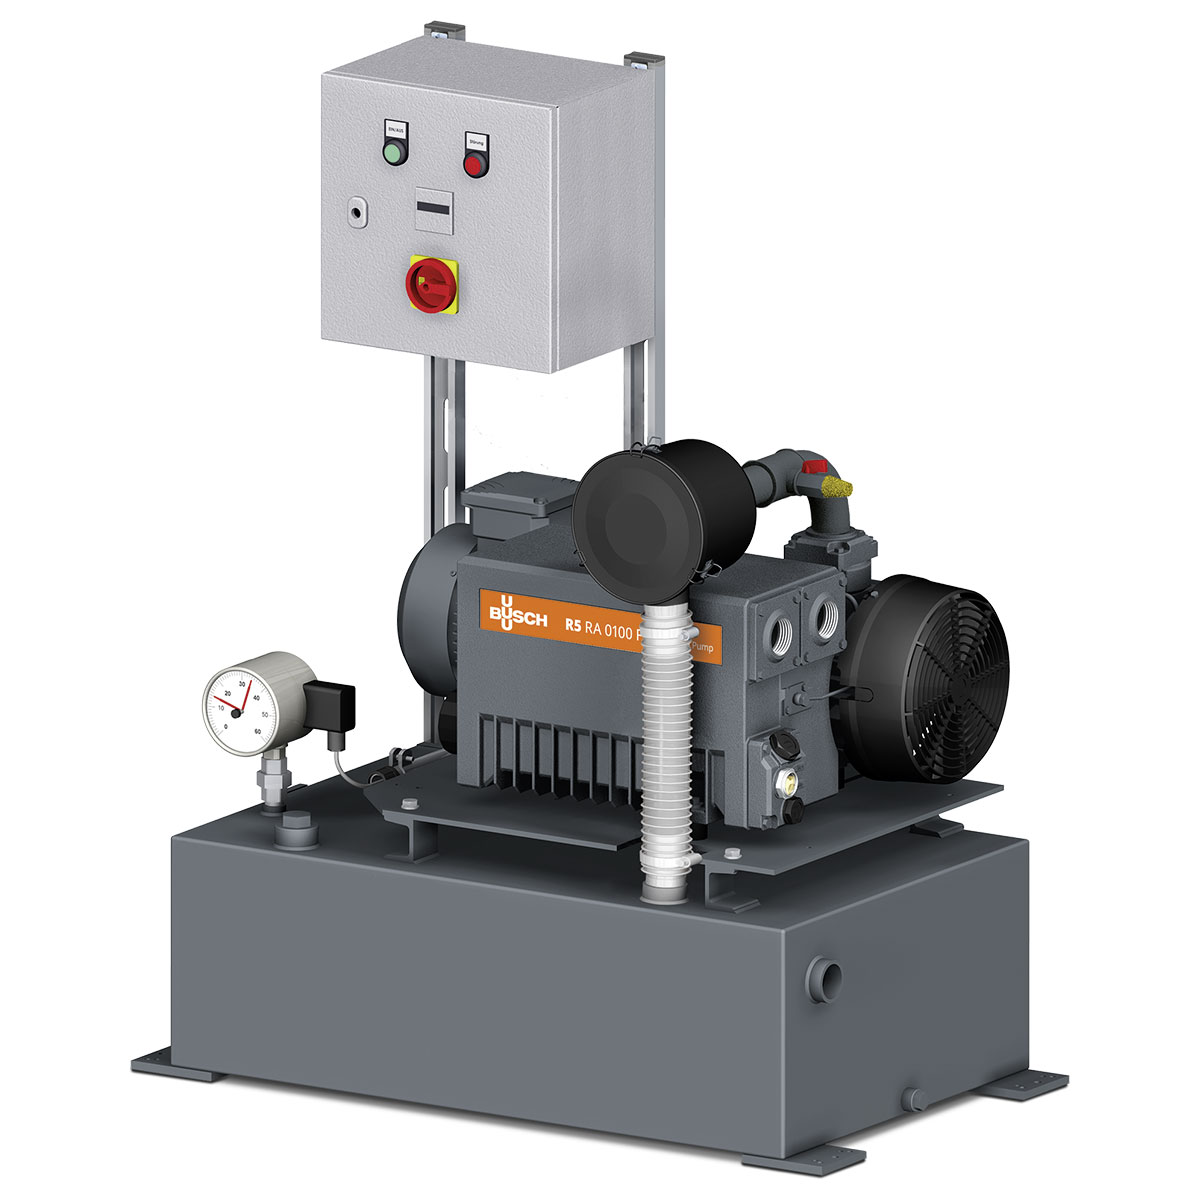 Vakuumsystem Simplex mit Drehschieber-Vakuumpumpe R5 RA 0025 F, 380 - 400 V